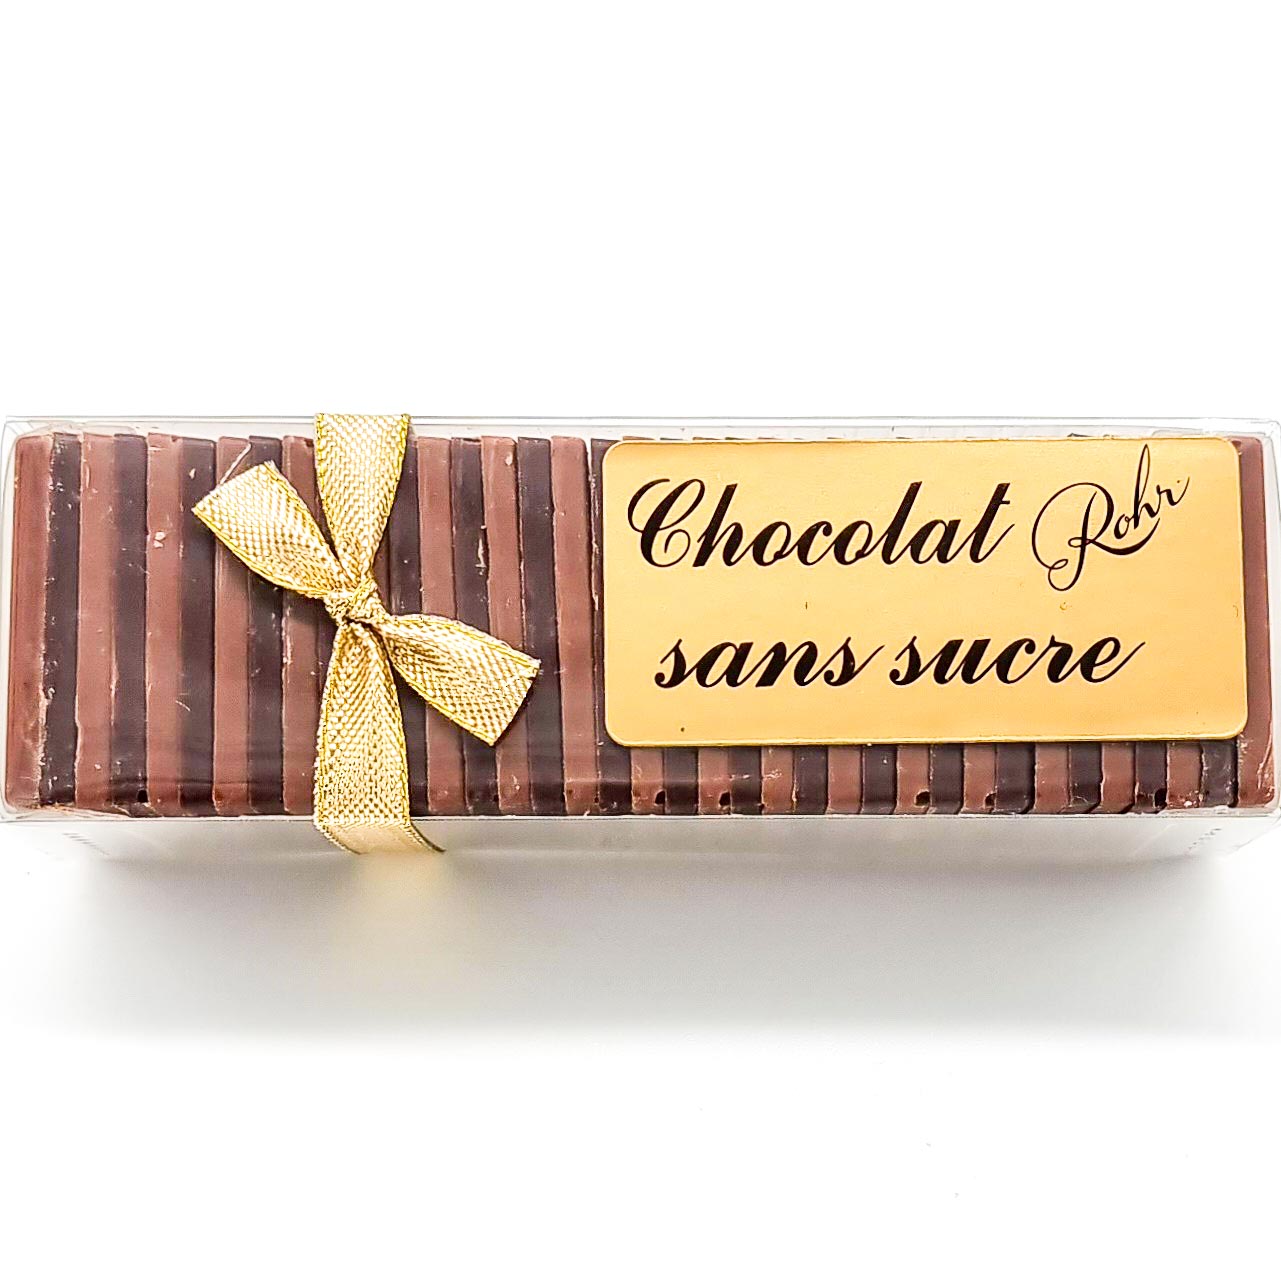 Lindt Swiss Surfin Bittersweet Dark Chocolate Gold Bar